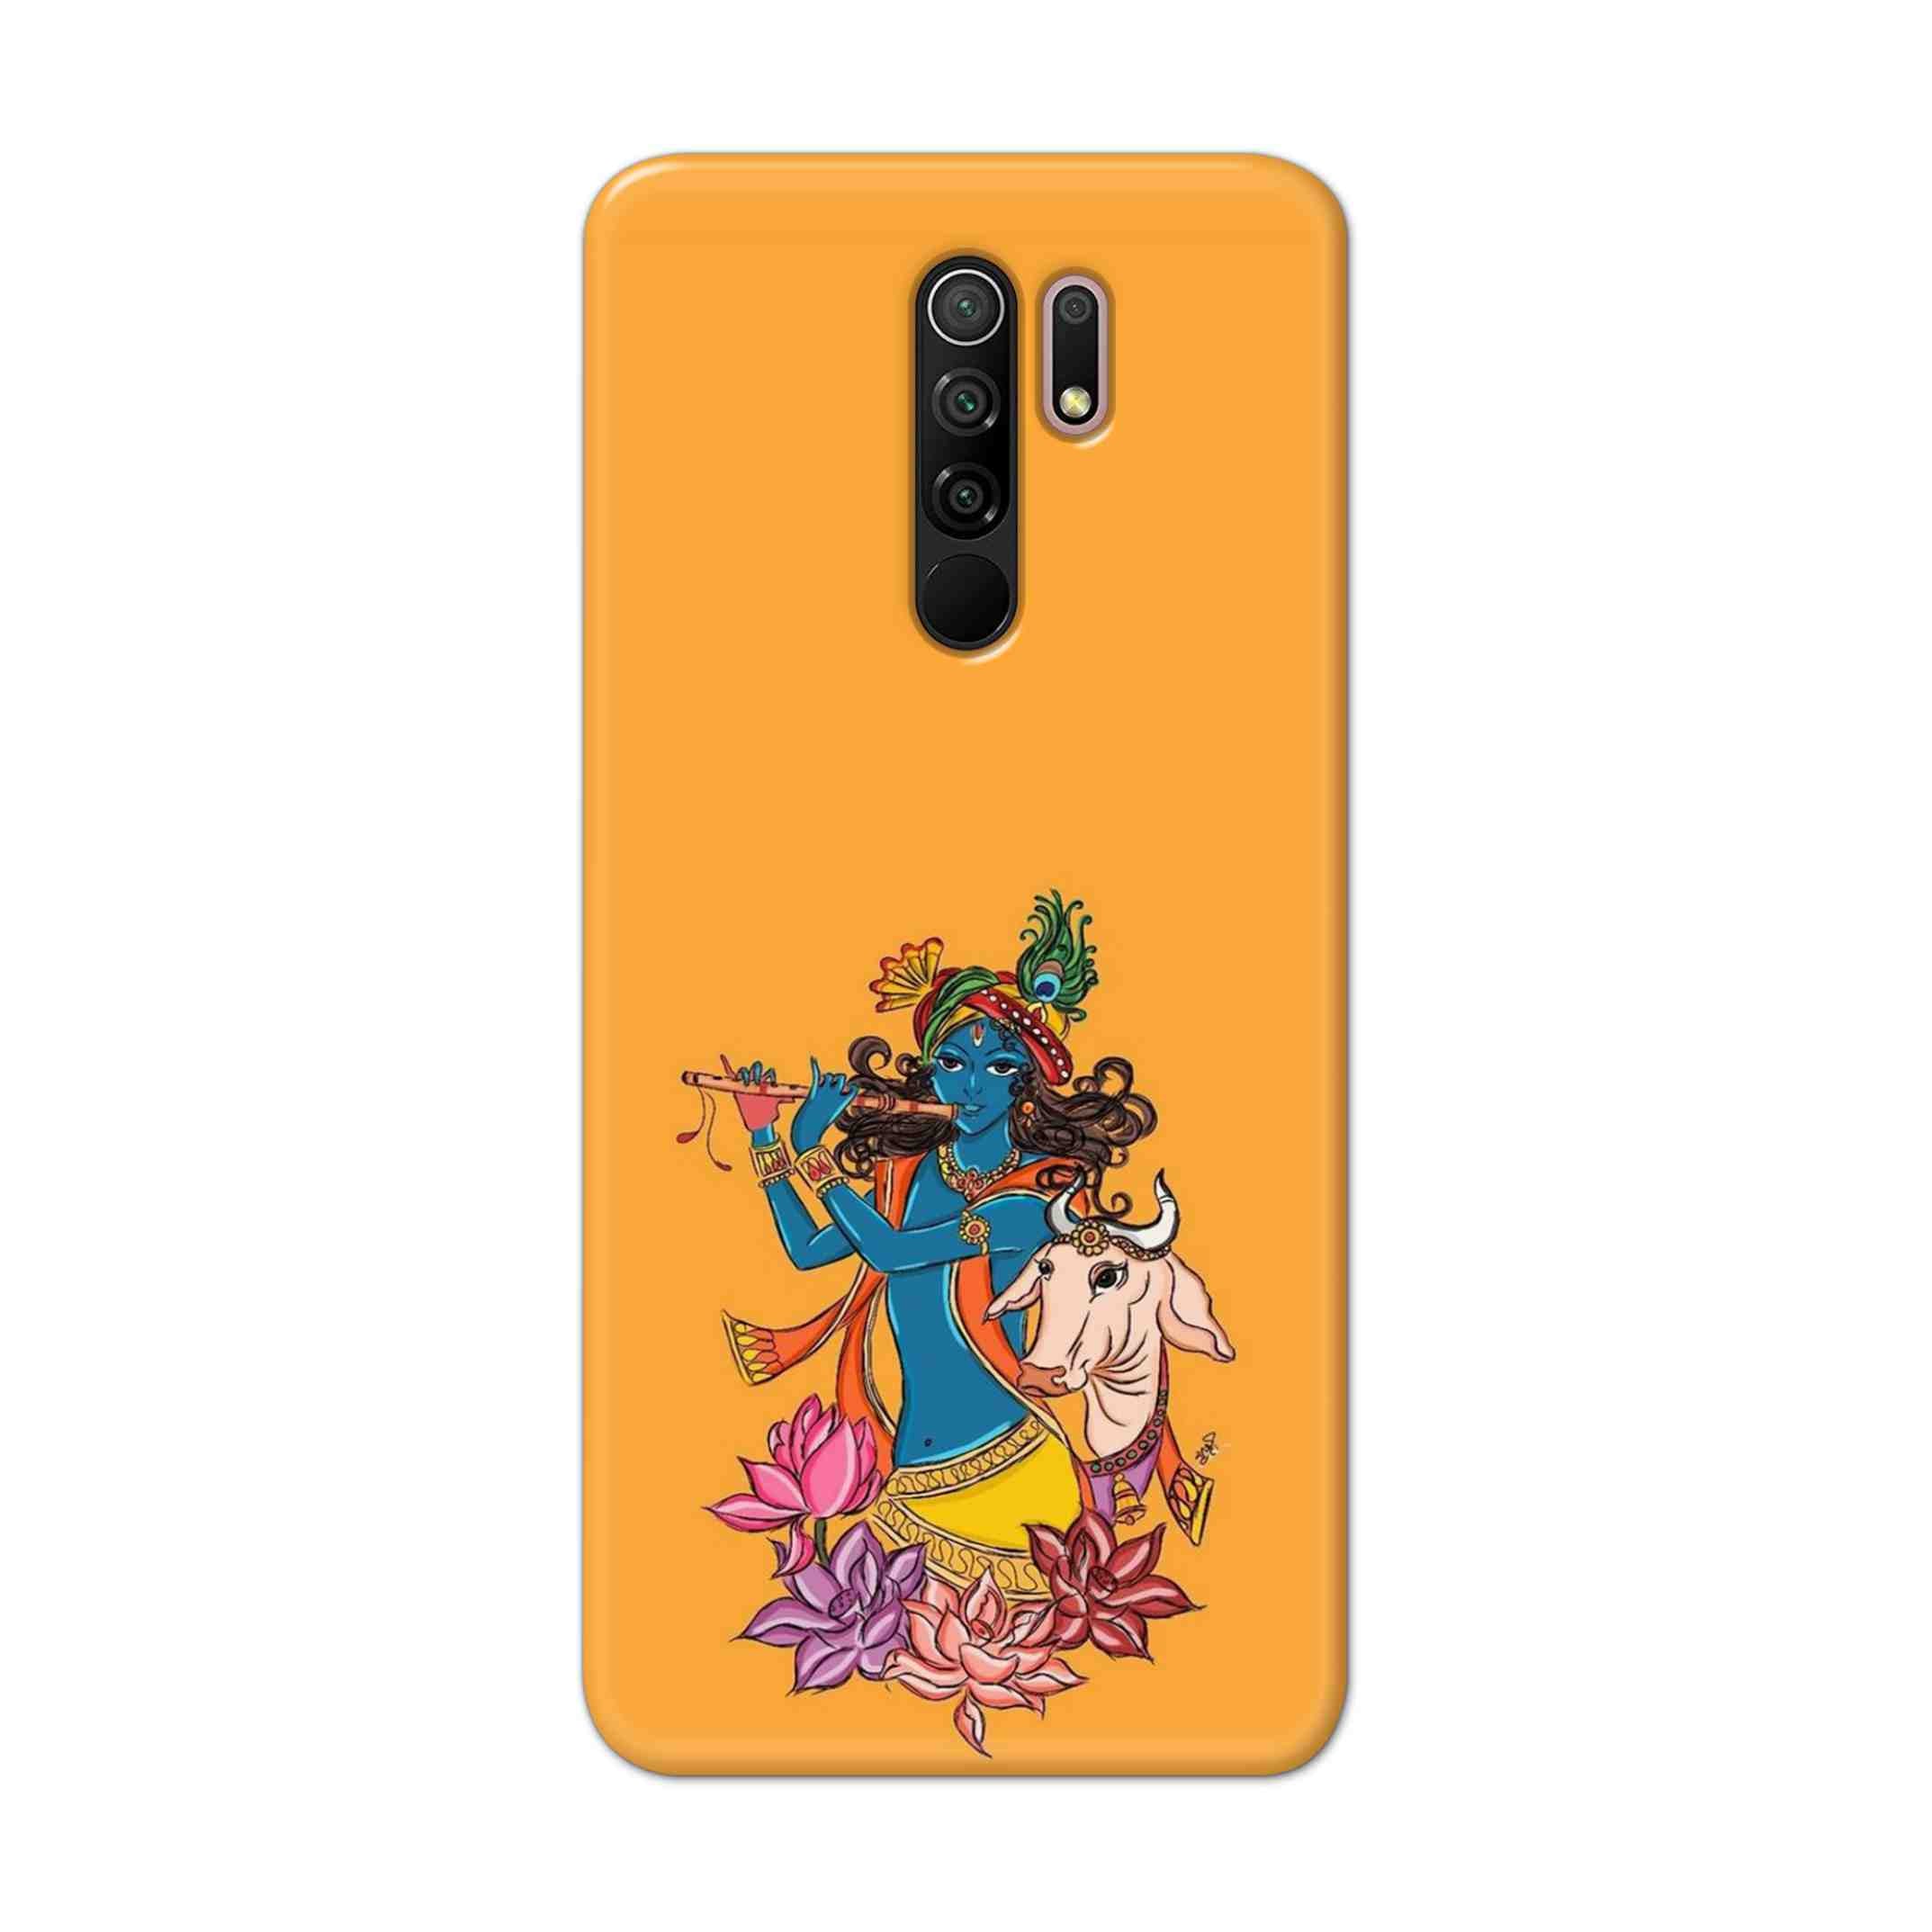 Buy Radhe Krishna Hard Back Mobile Phone Case Cover For Xiaomi Redmi 9 Prime Online